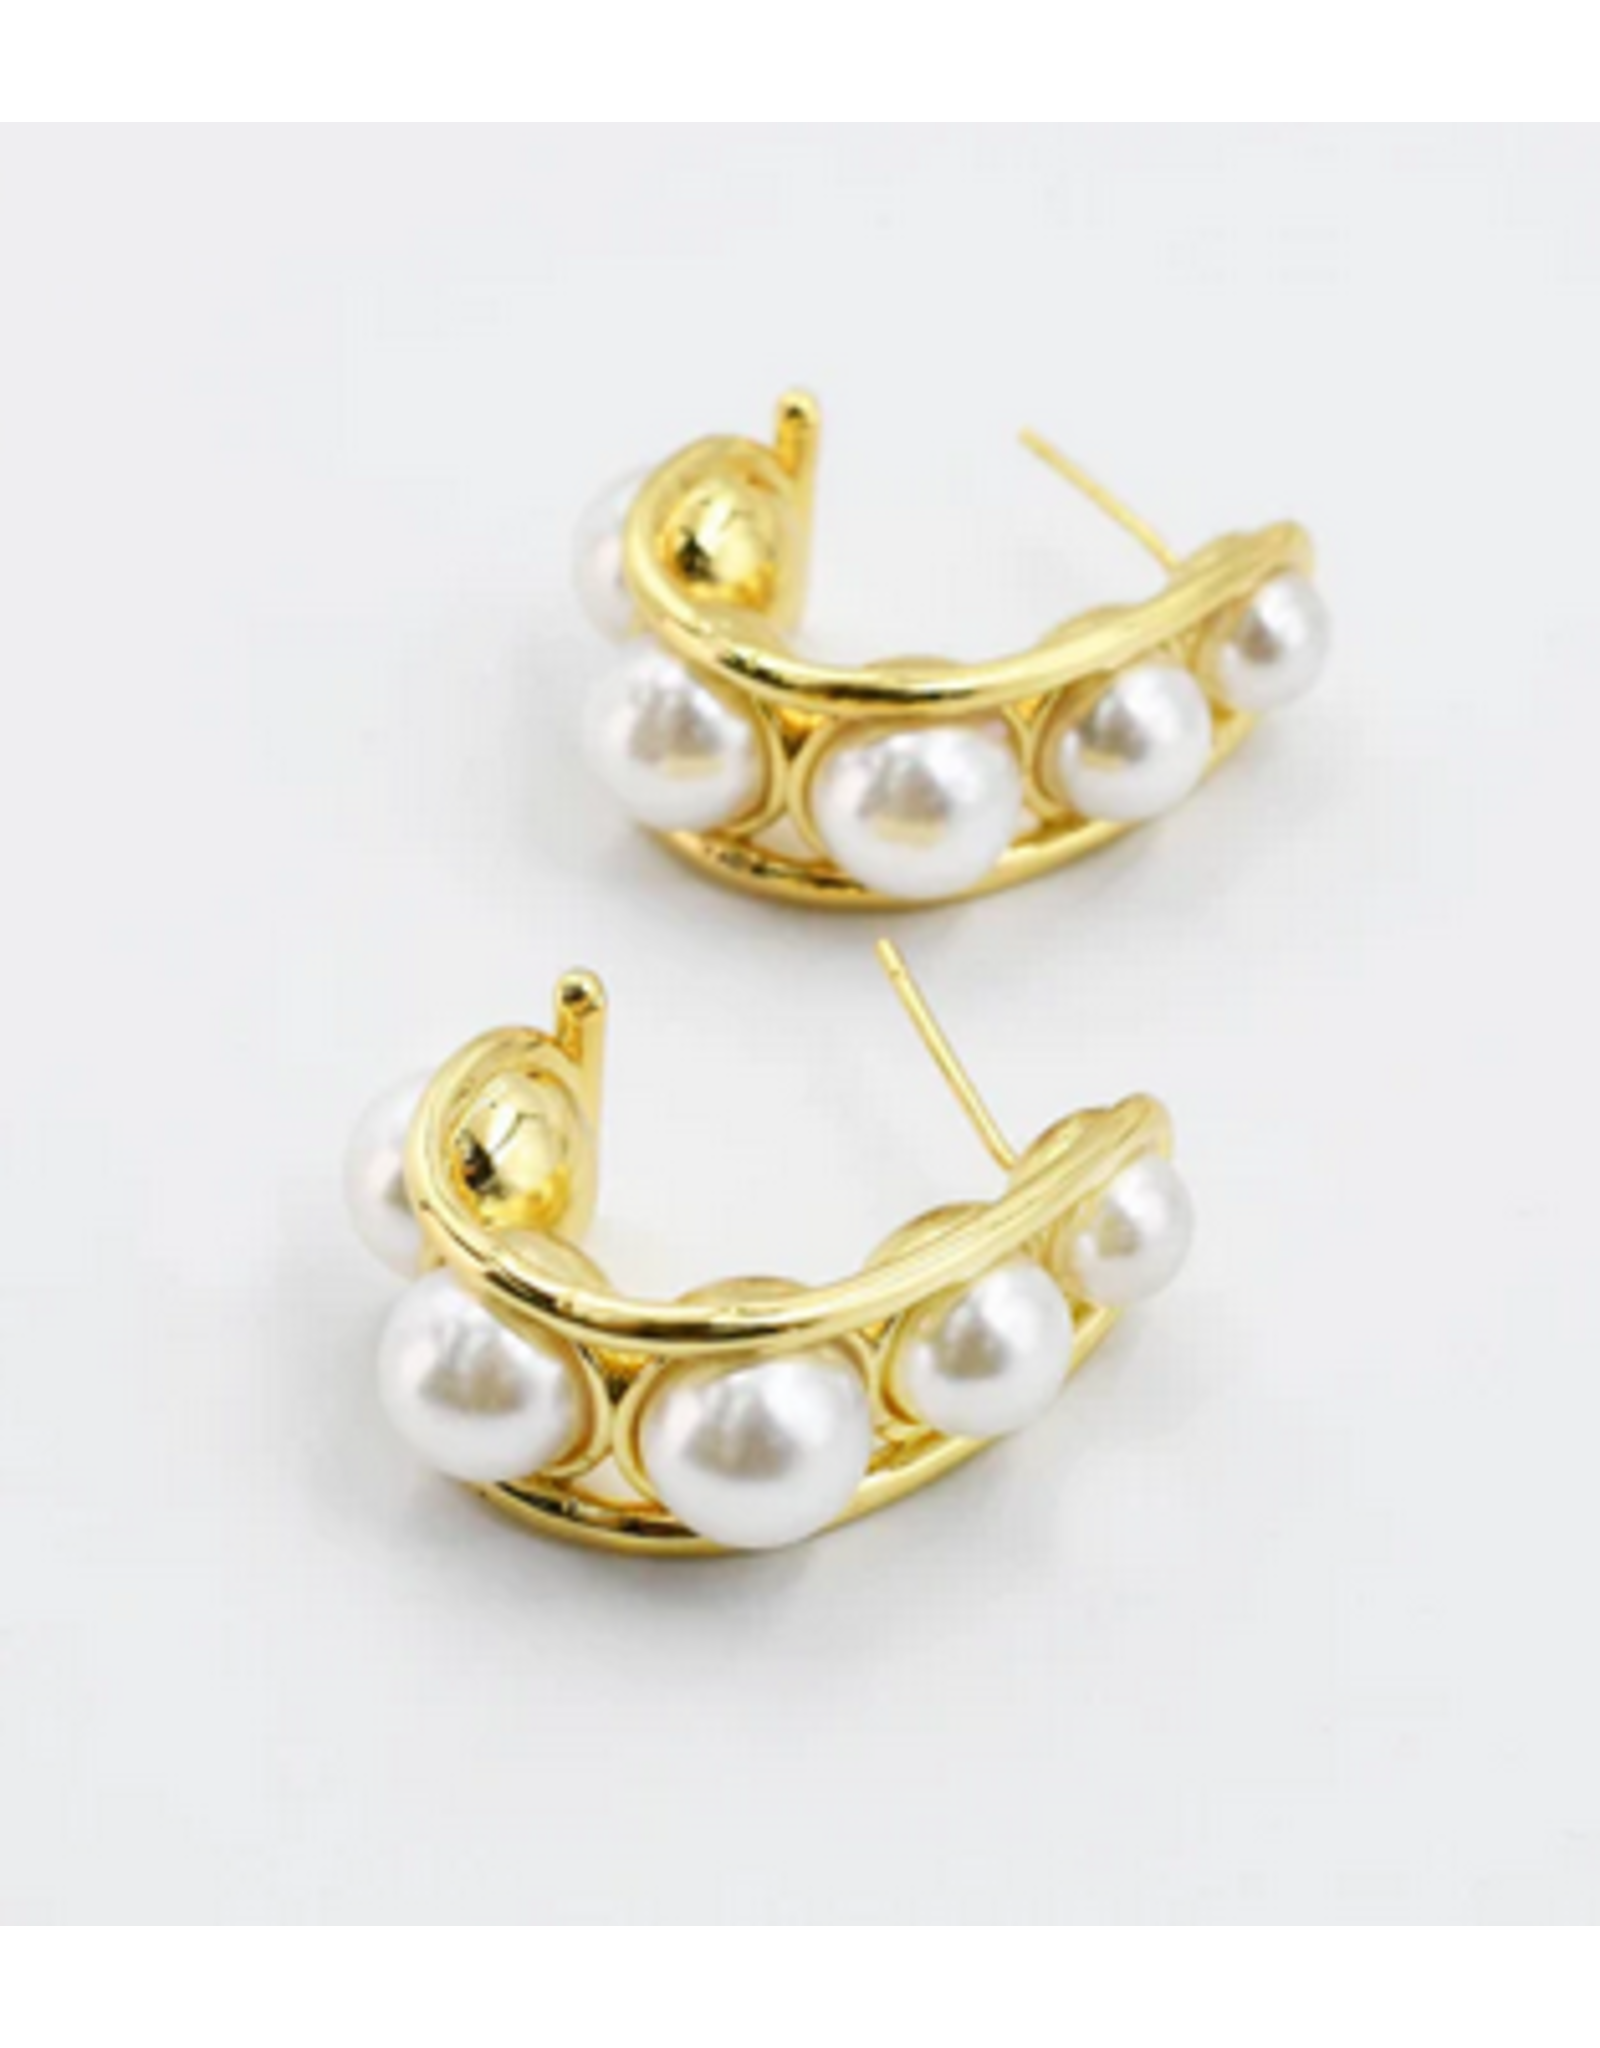 Treasure Jewels Glam Pearl Hoop Earrings